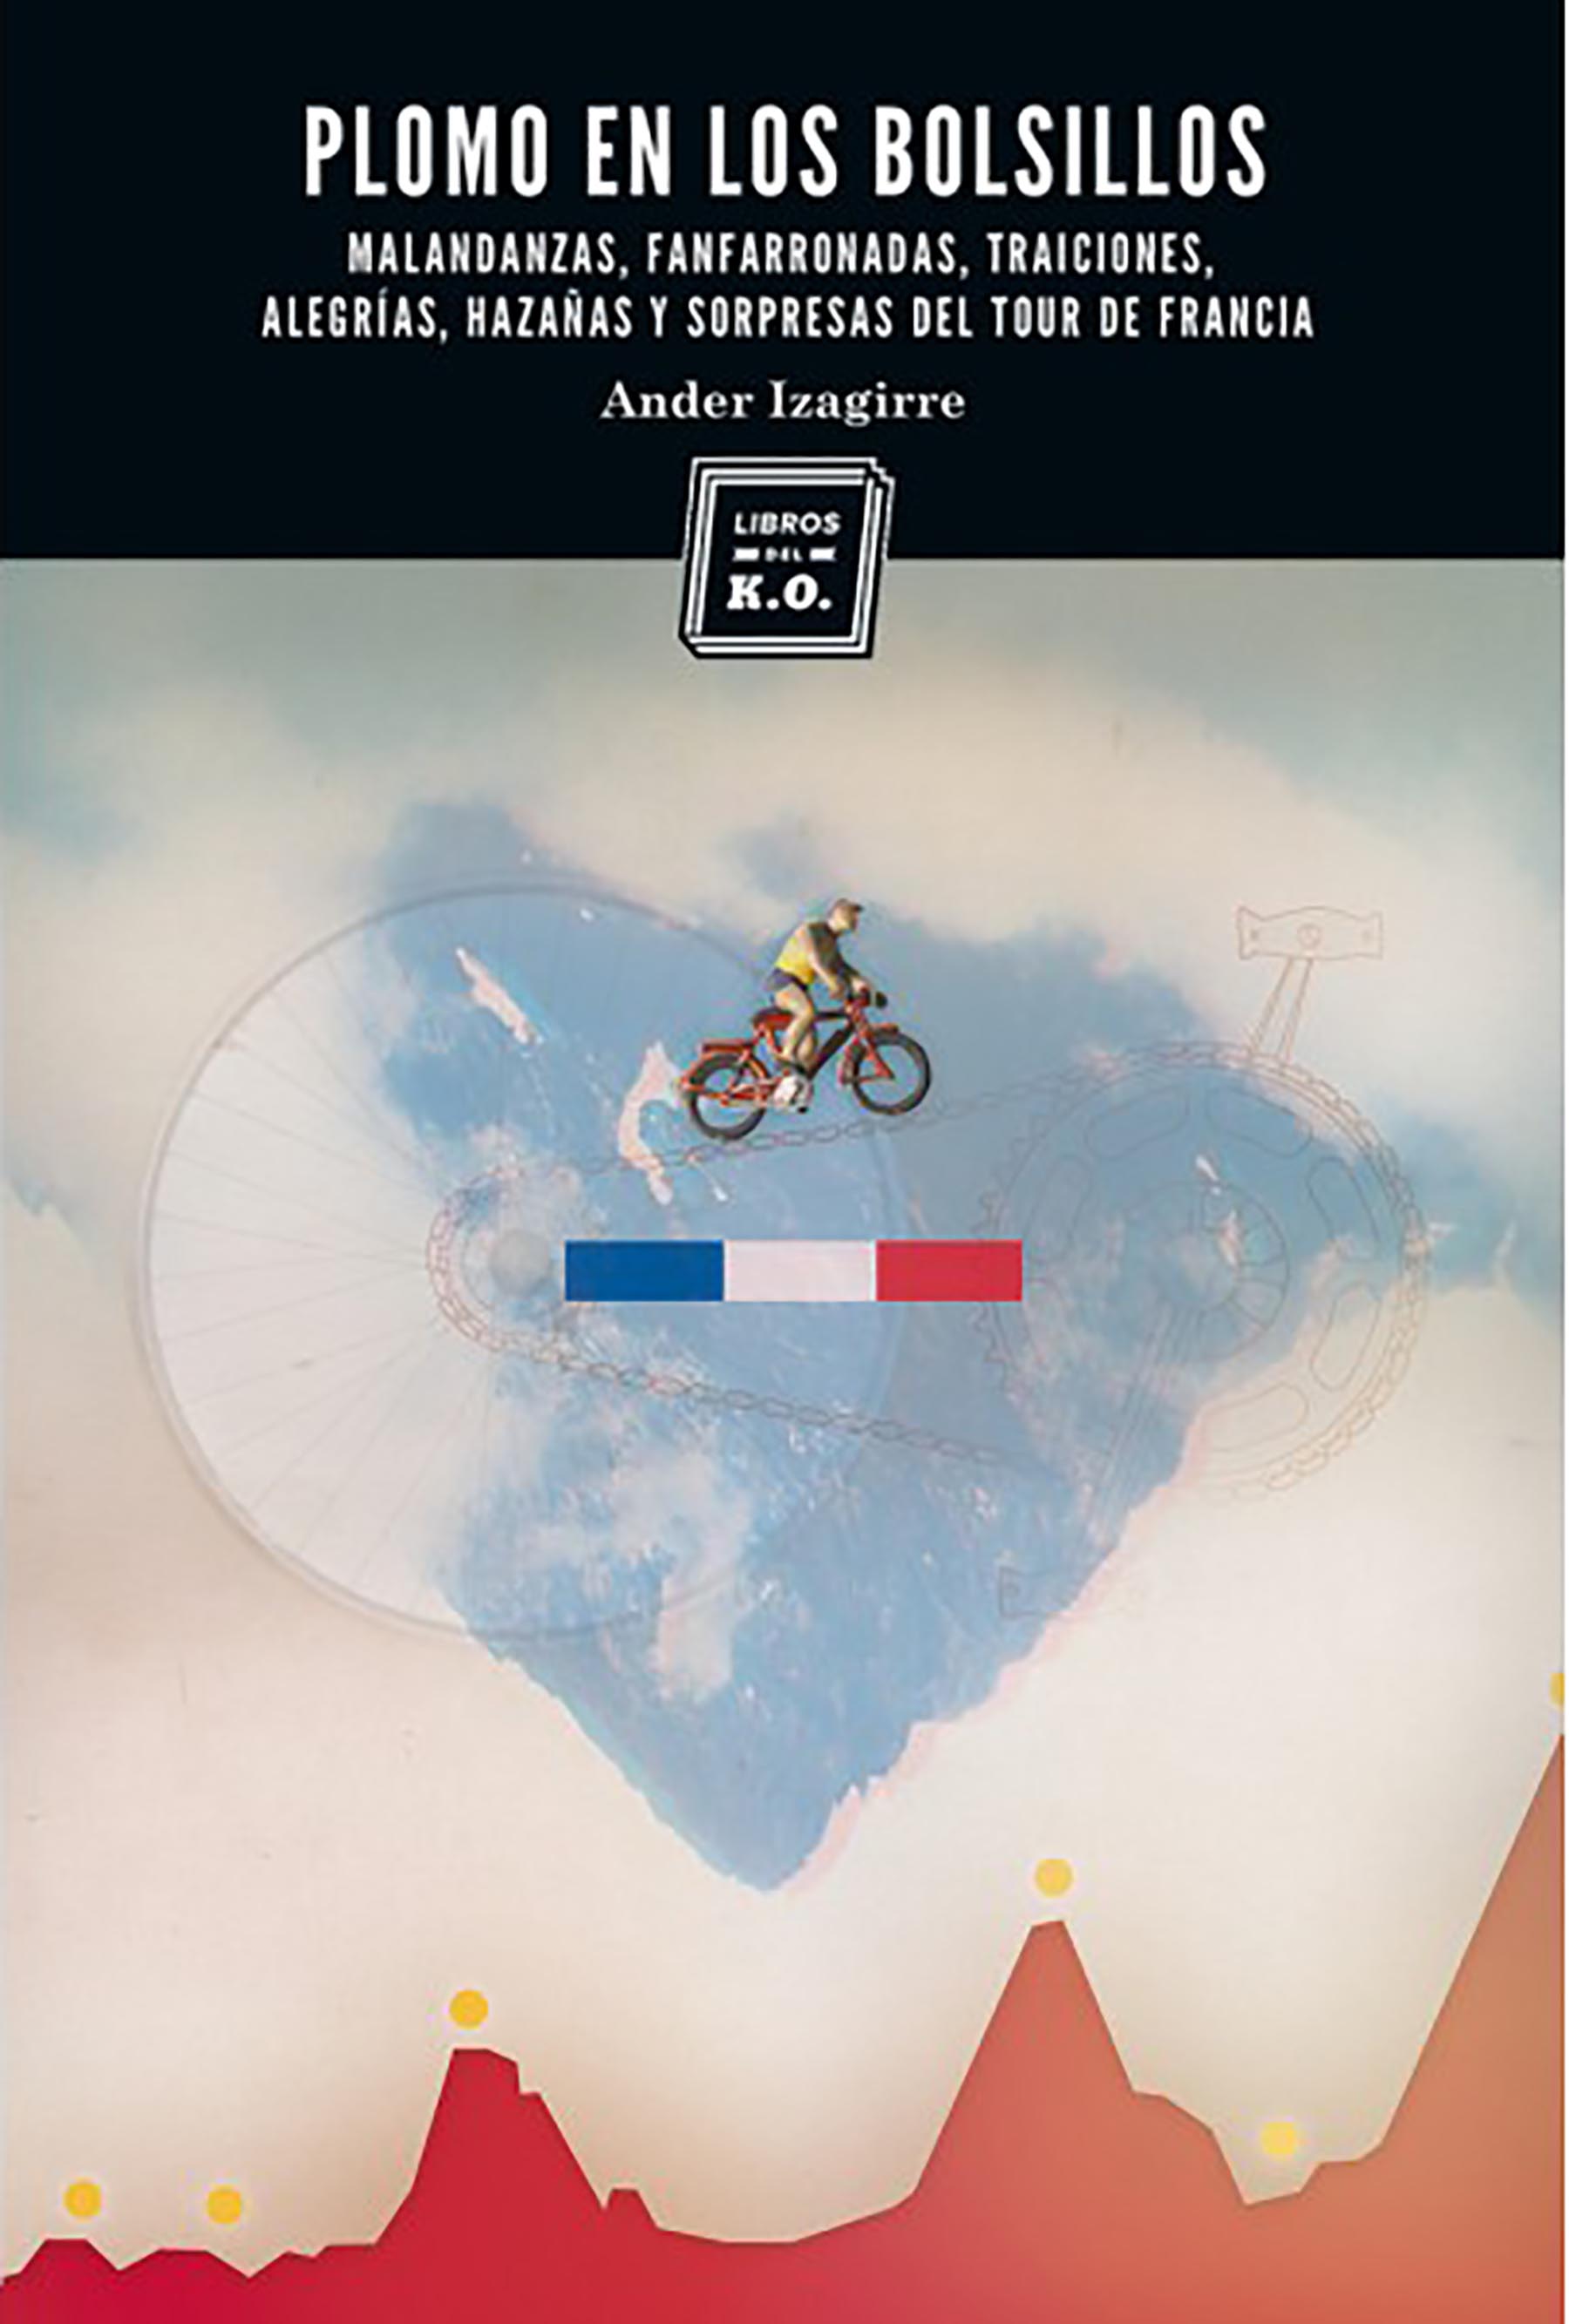 Para Ander Izaguirre, autor de Plomo en los bolsillos, uno de los mejores libros de ciclismo contiene elementos de la condición humana como el drama, la tragedia y el humor.